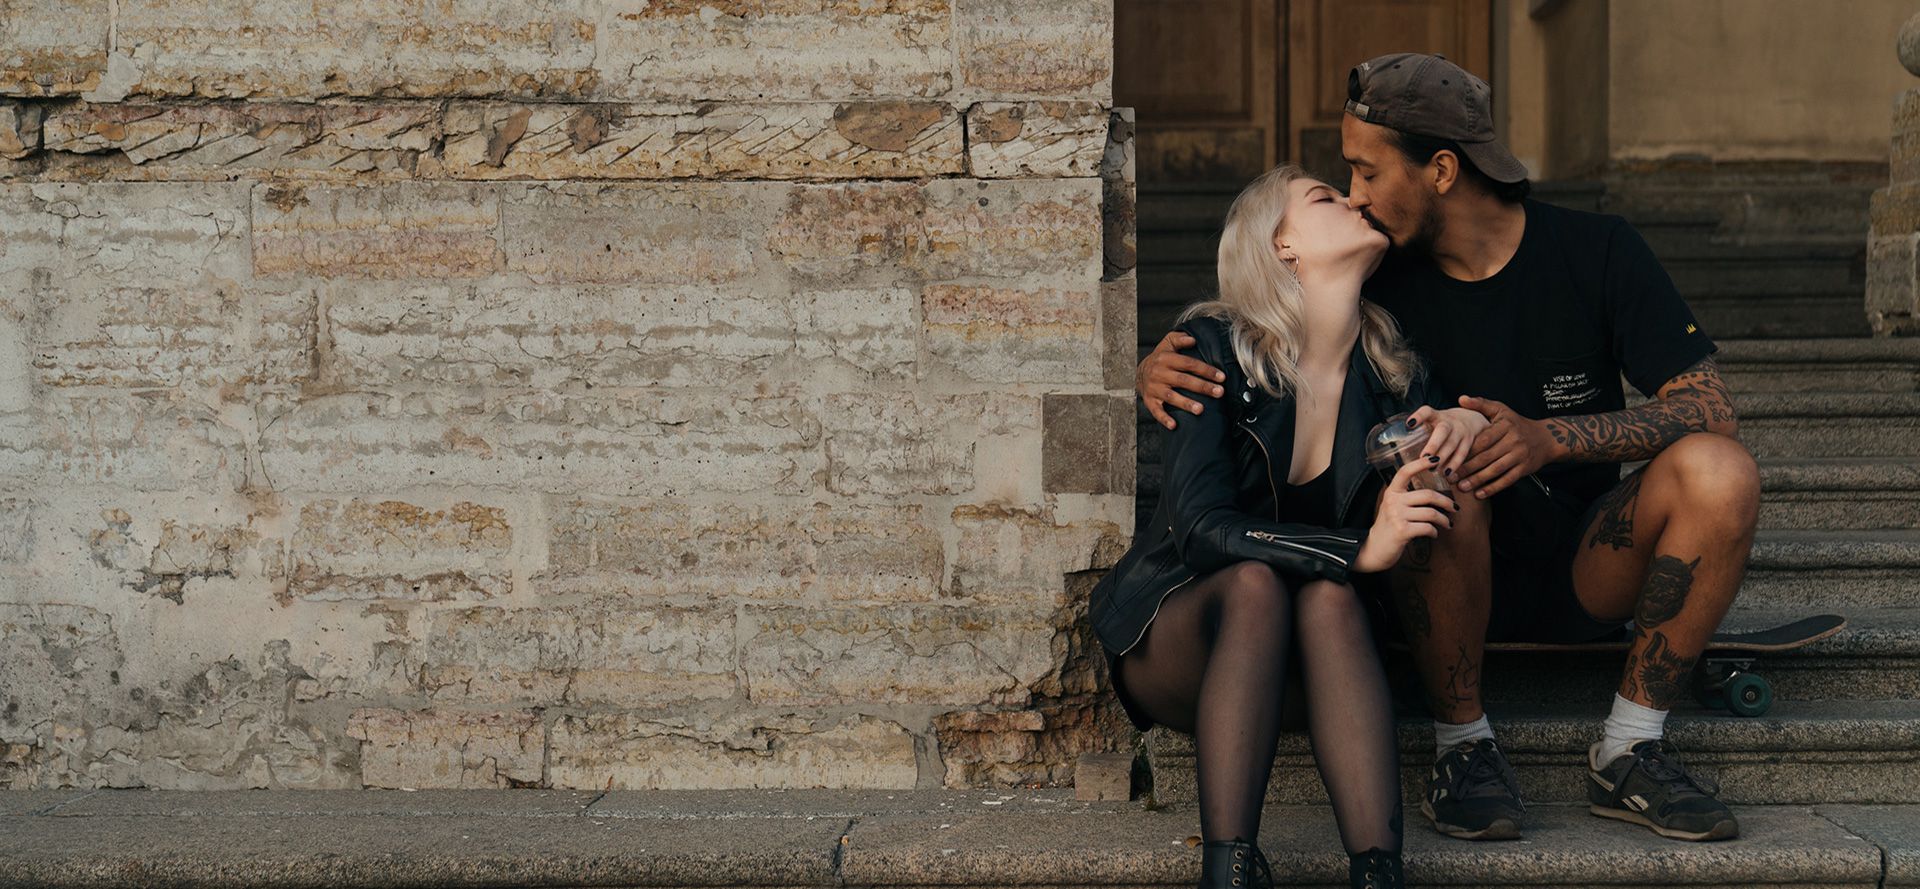 En mand kysser en blond kvinde.